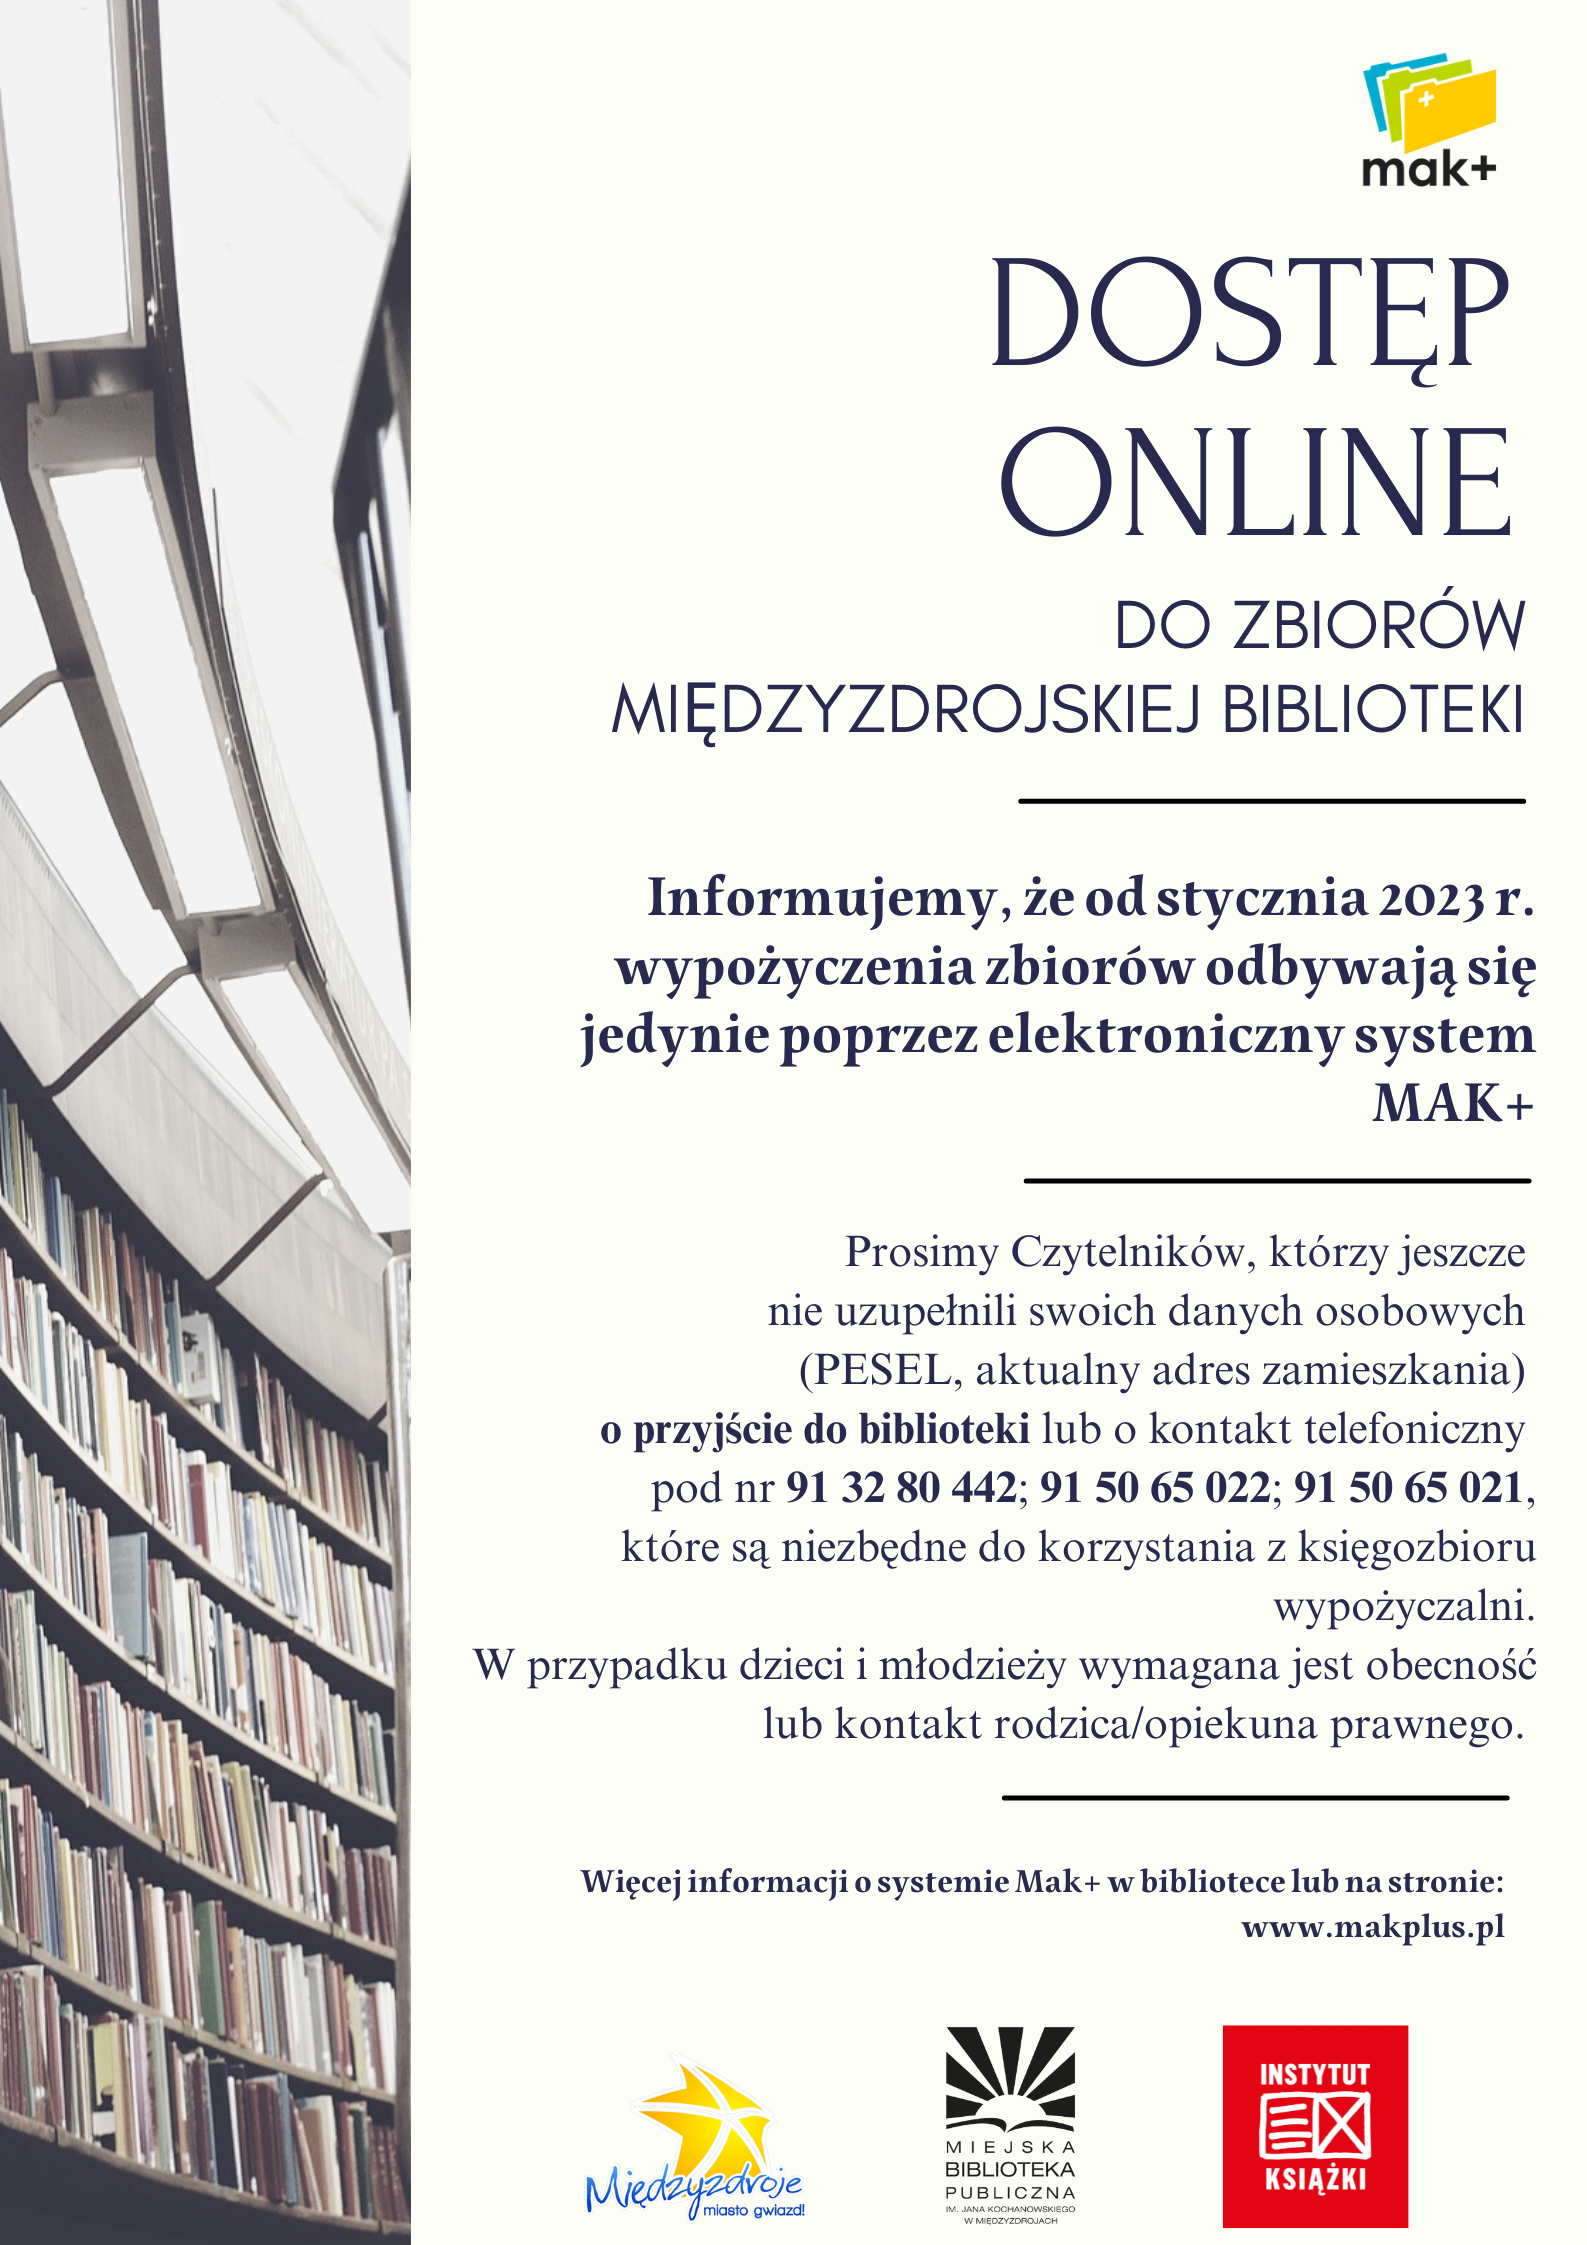 Dostęp on-line do zbiorów międzyzdrojskiej biblioteki